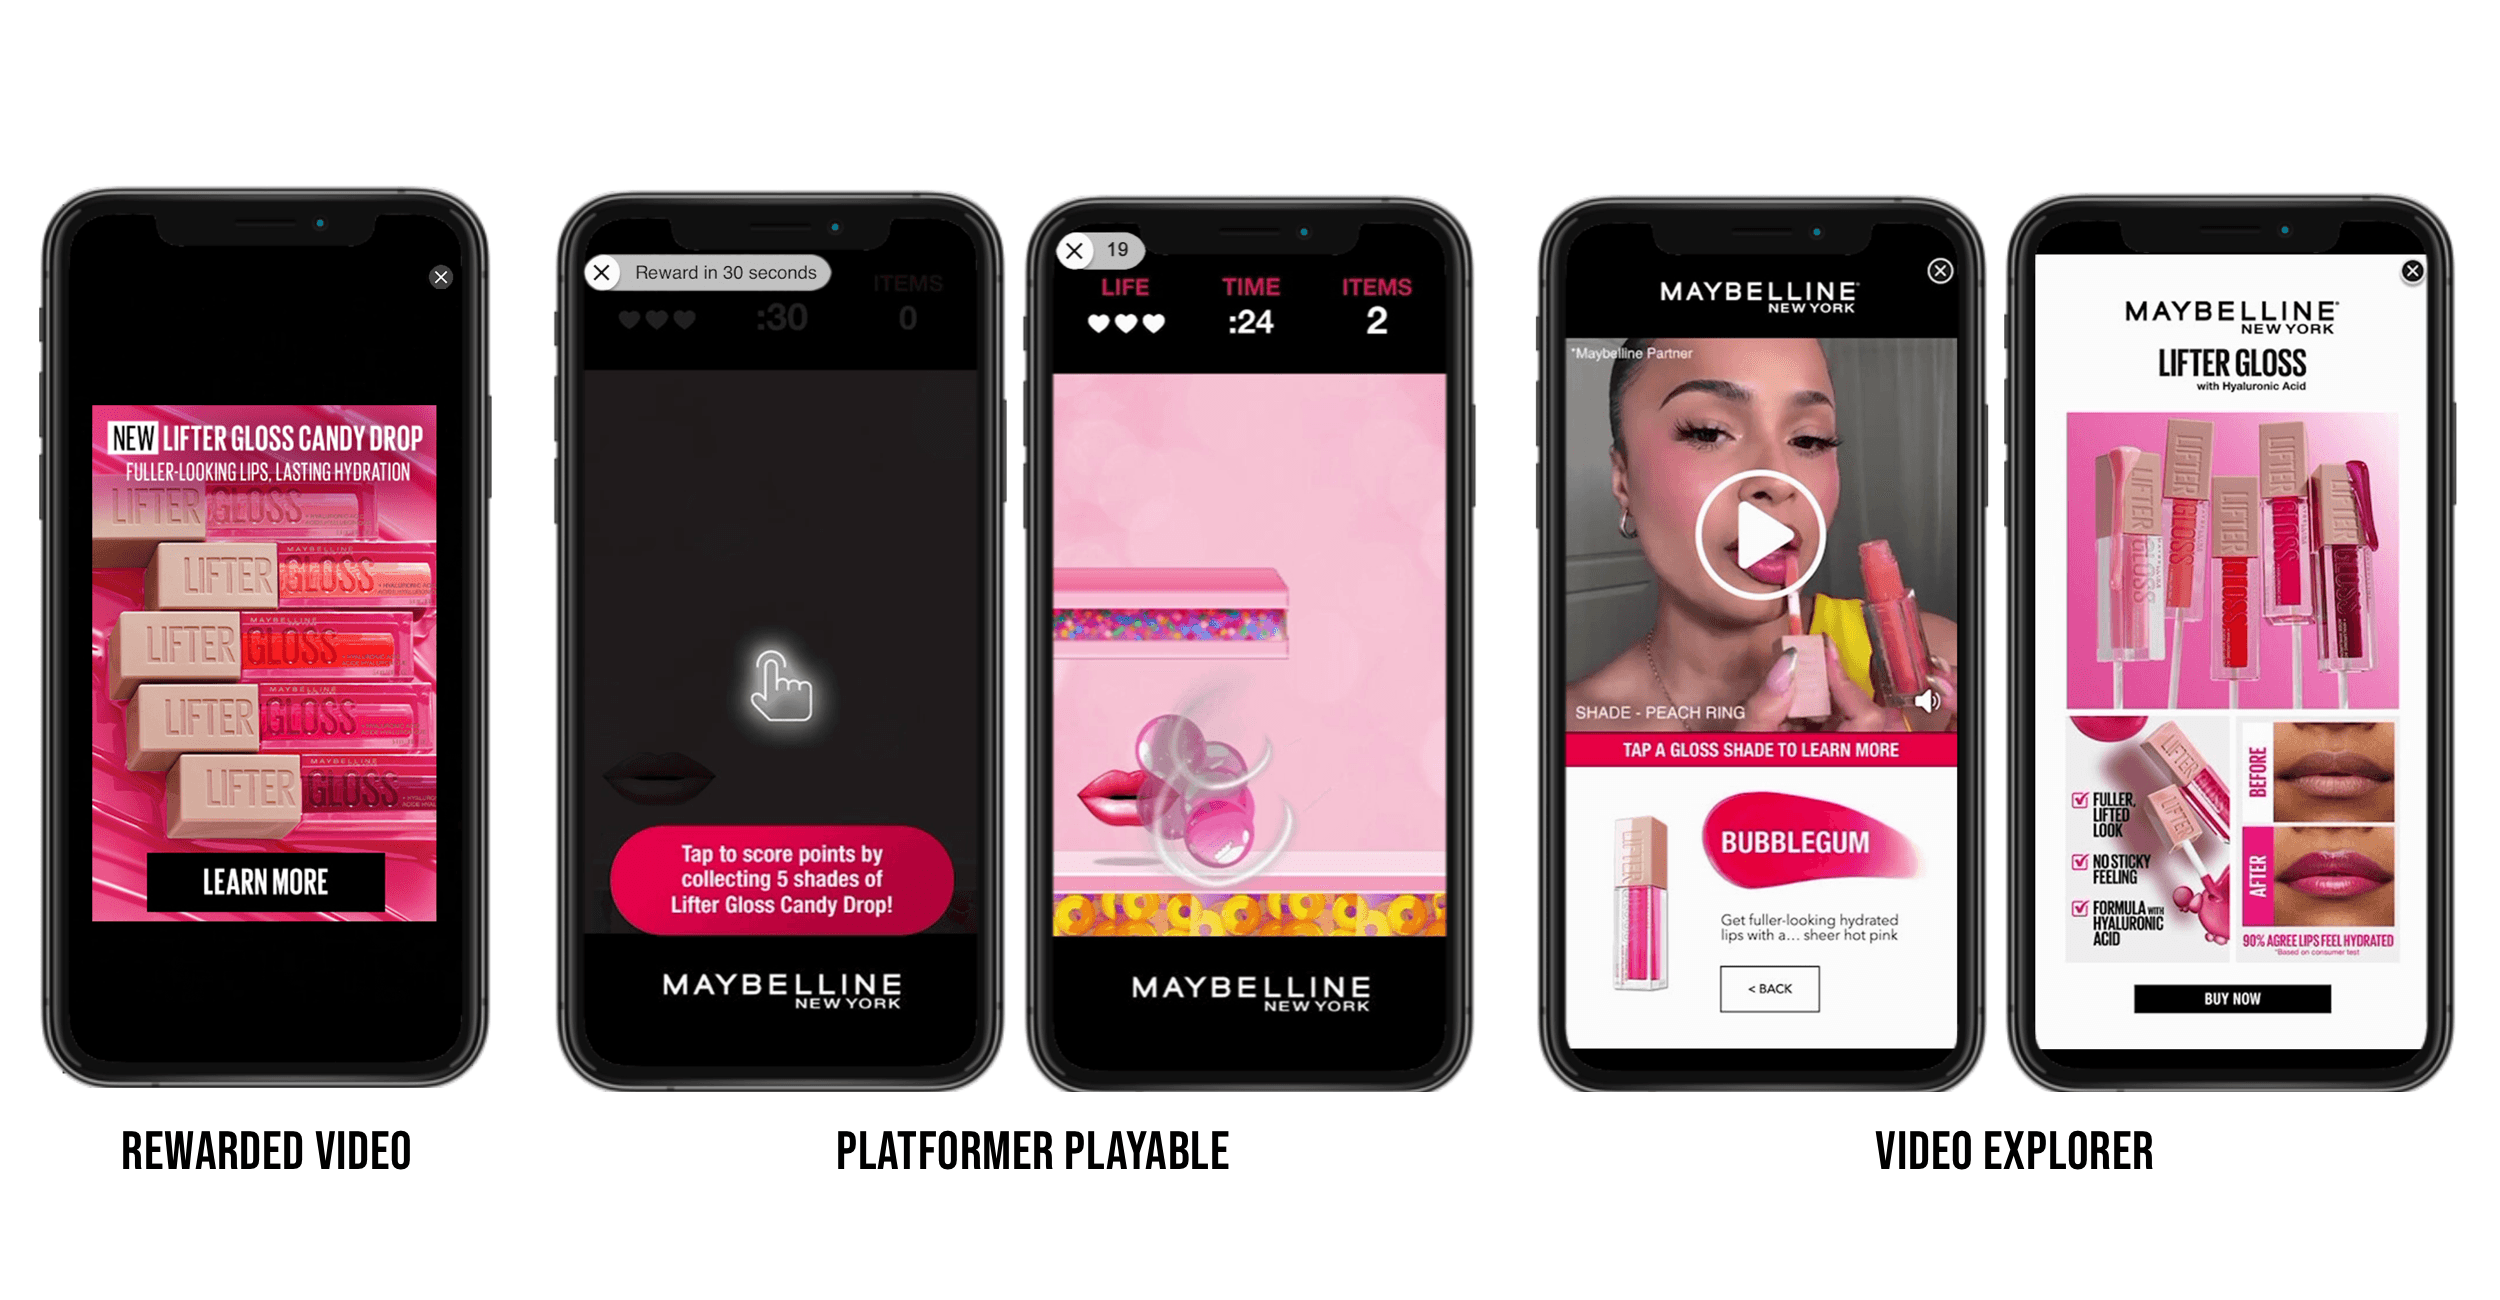 Ejemplos de la campaña Lifter Gloss Candy Drop